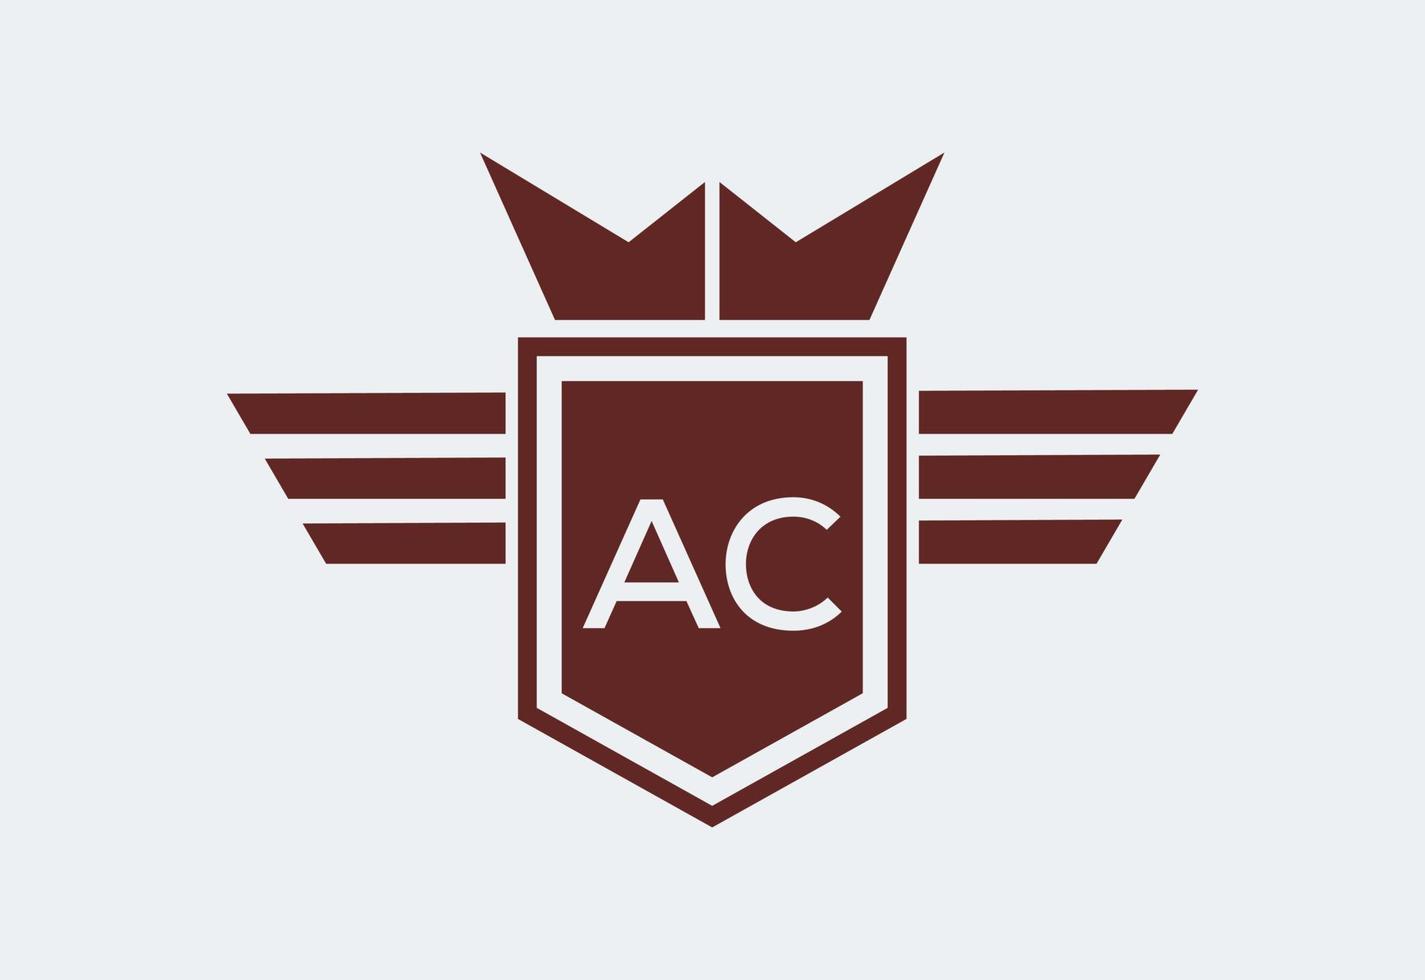 iniziale AC lettera logo disegno, vettore design concetto